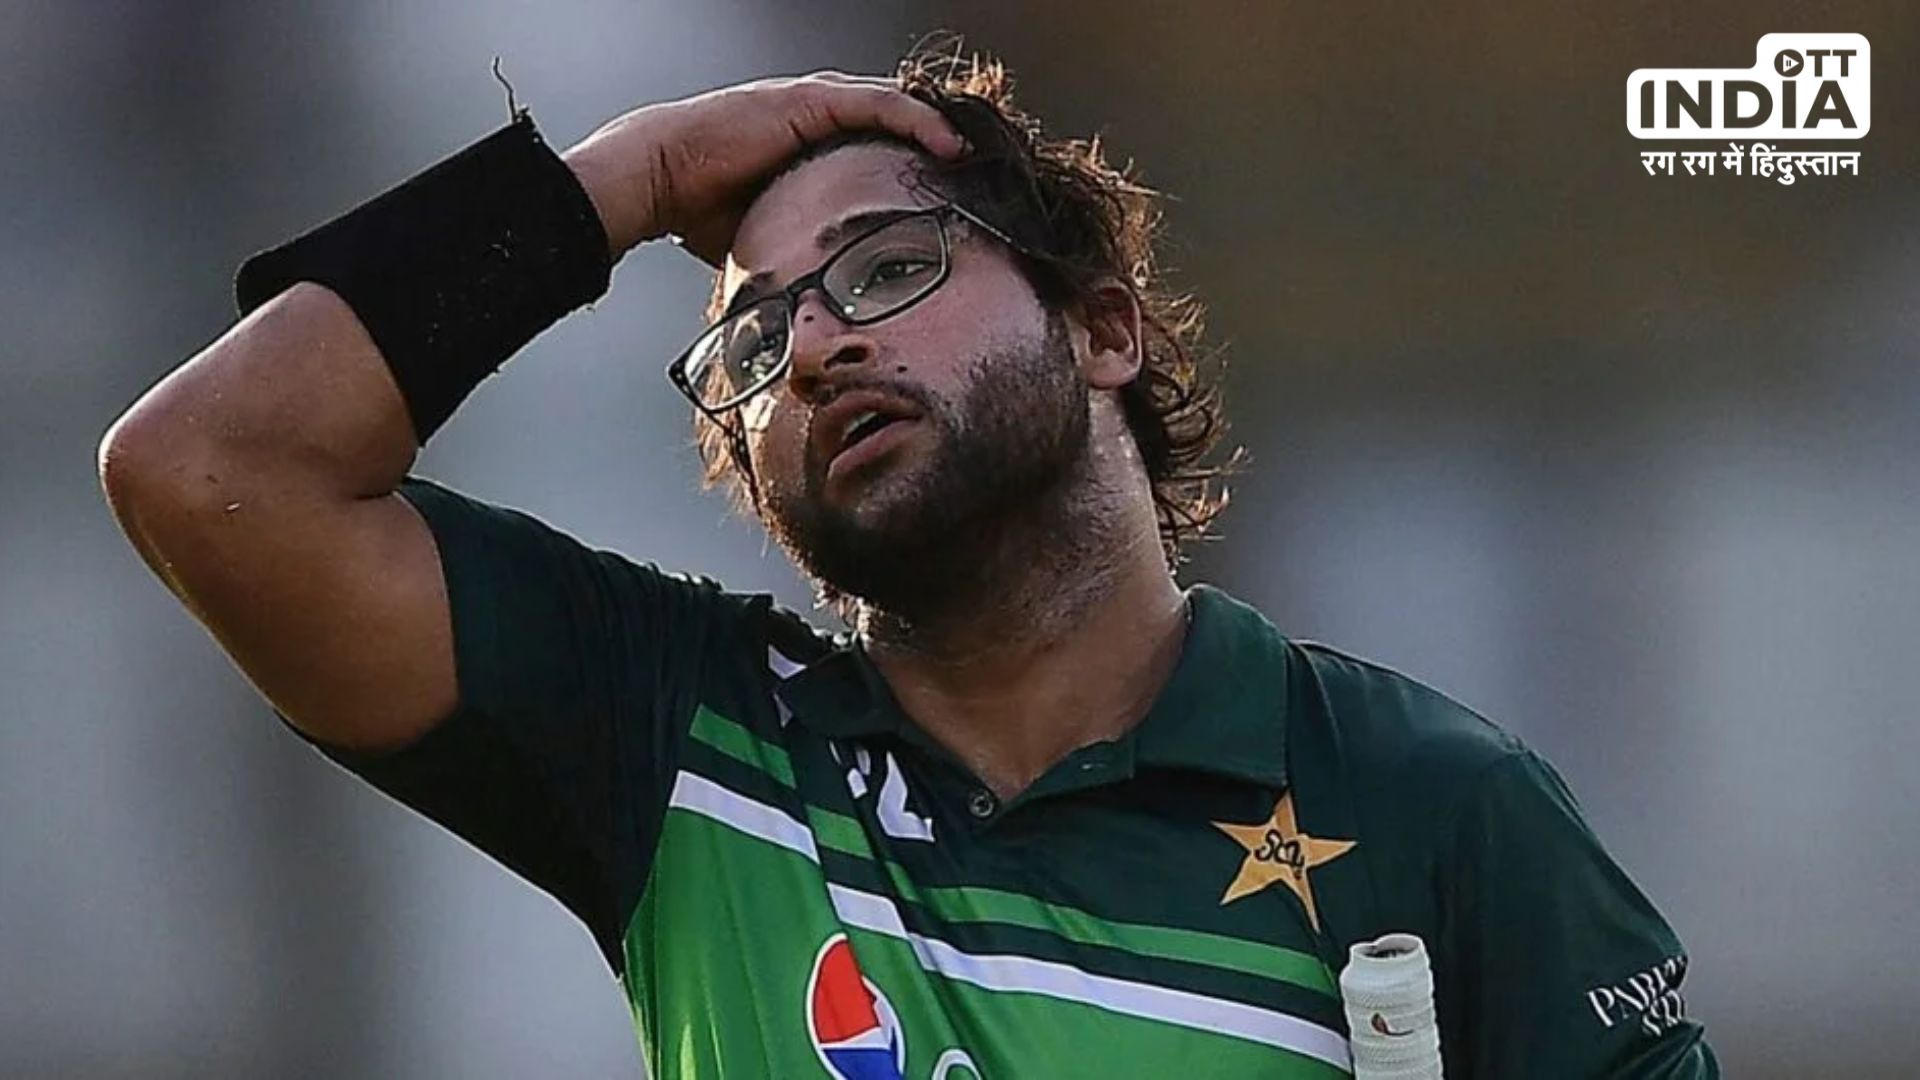 Imam UL Haq Chat : पाकिस्तानी क्रिकेटर इमाम उल हक की प्राइवेट चैट हुई वायरल, पढ़कर आपको भी आ जाएगी शर्म…